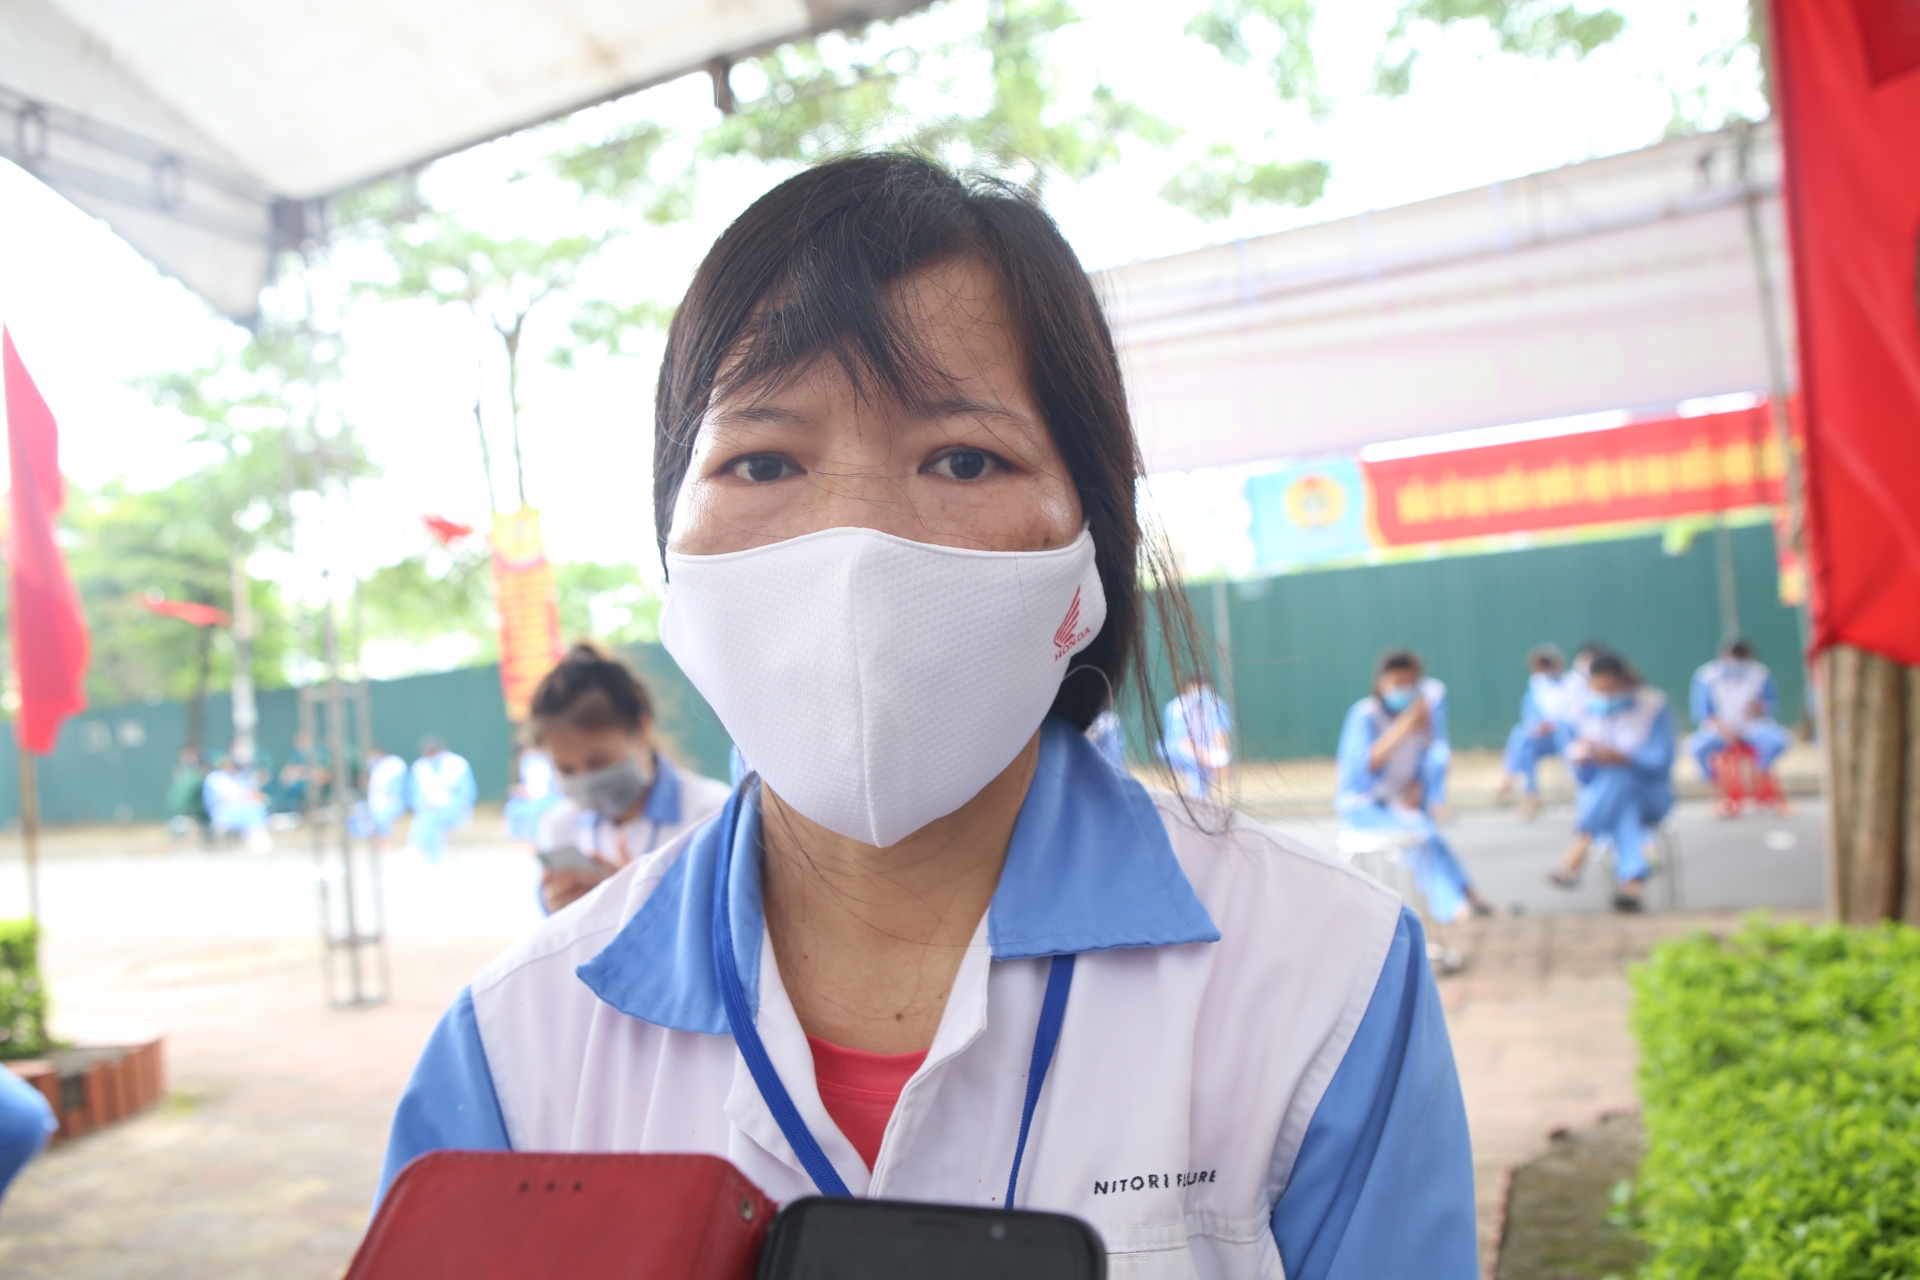 Công nhân các khu công nghiệp Hà Nội: Mong đại biểu quan tâm đến người lao động